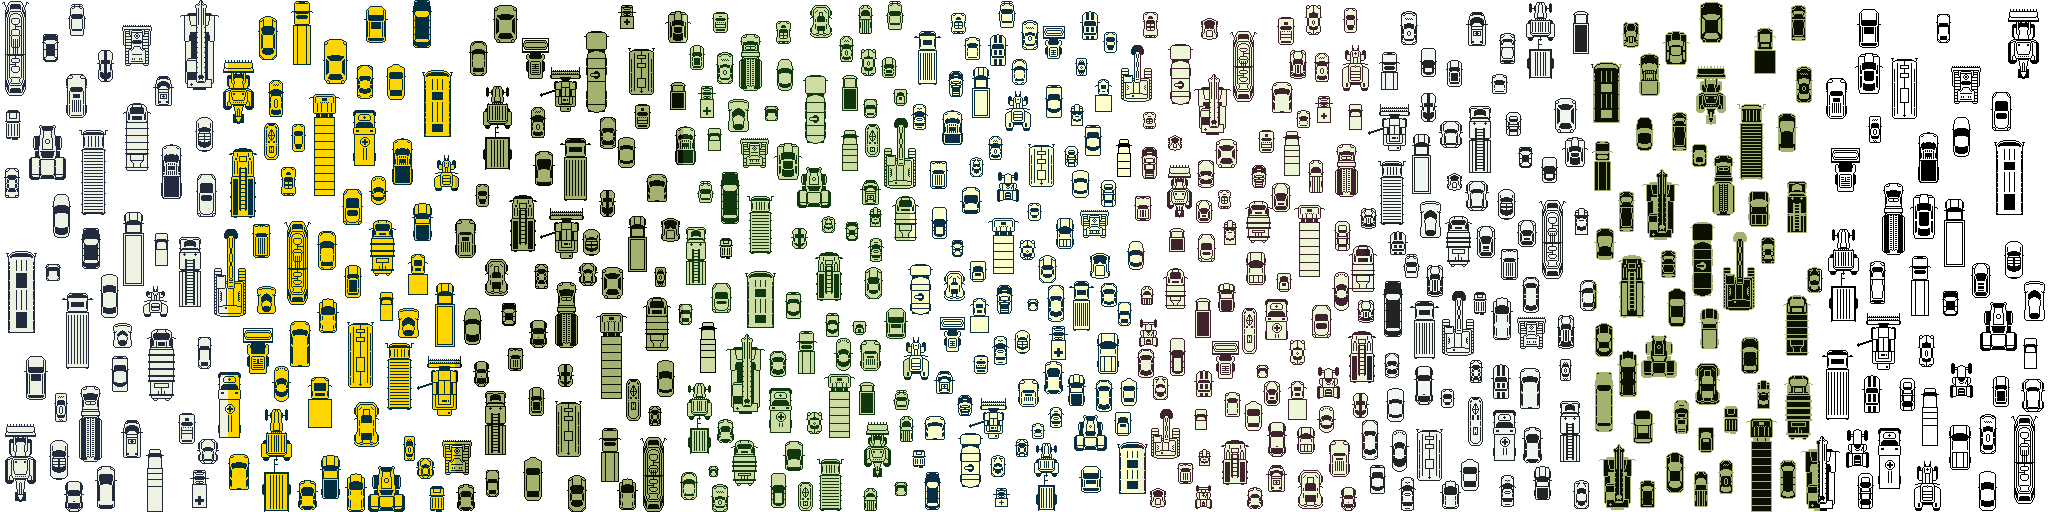 1633 units One bit pixel art cars